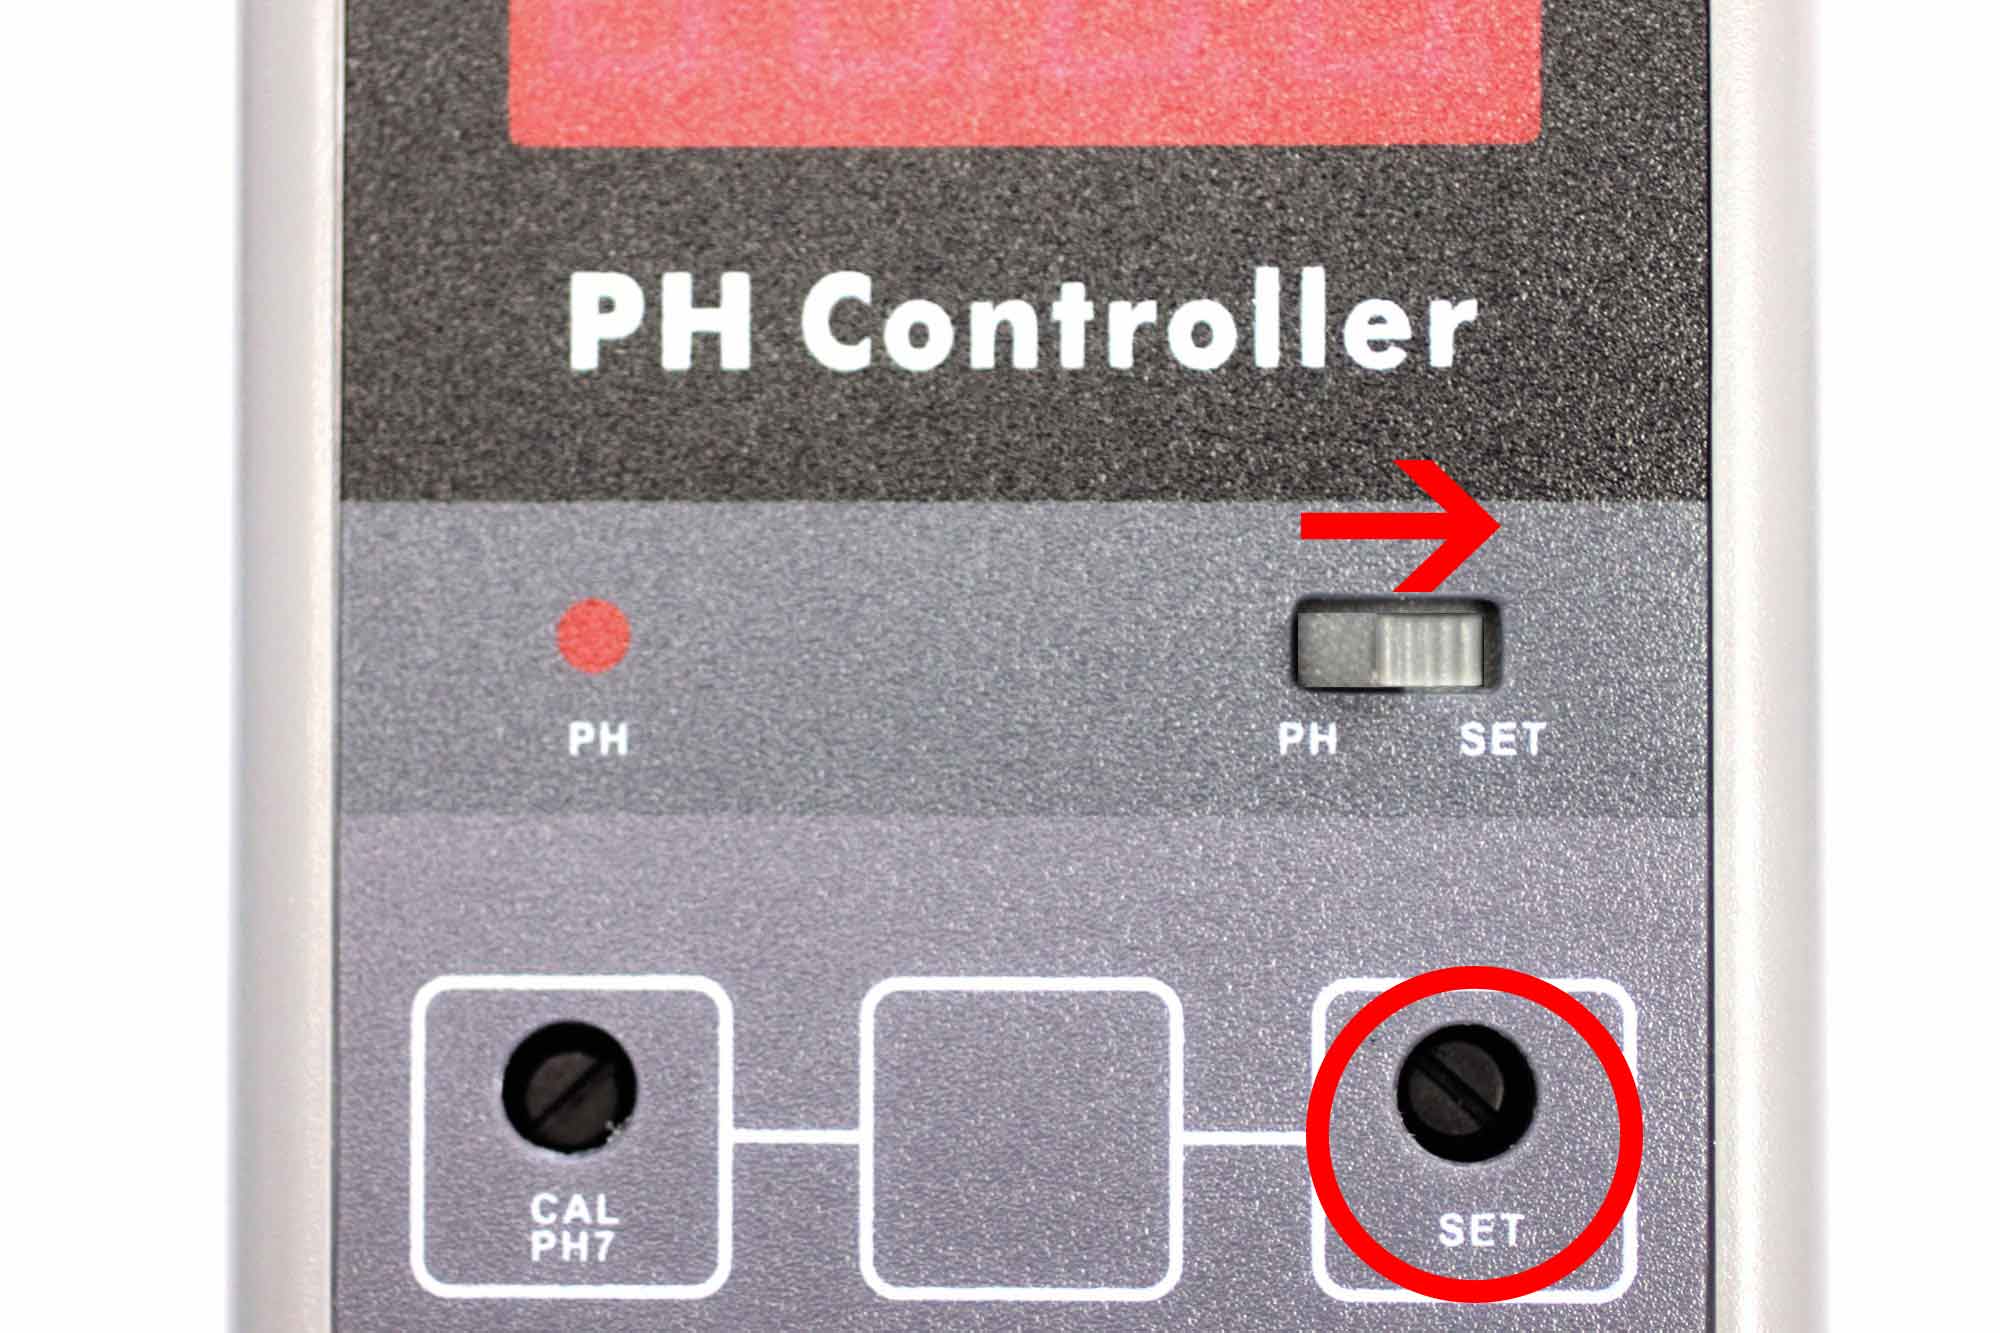 Réglage du niveau de pH sur le contrôleur